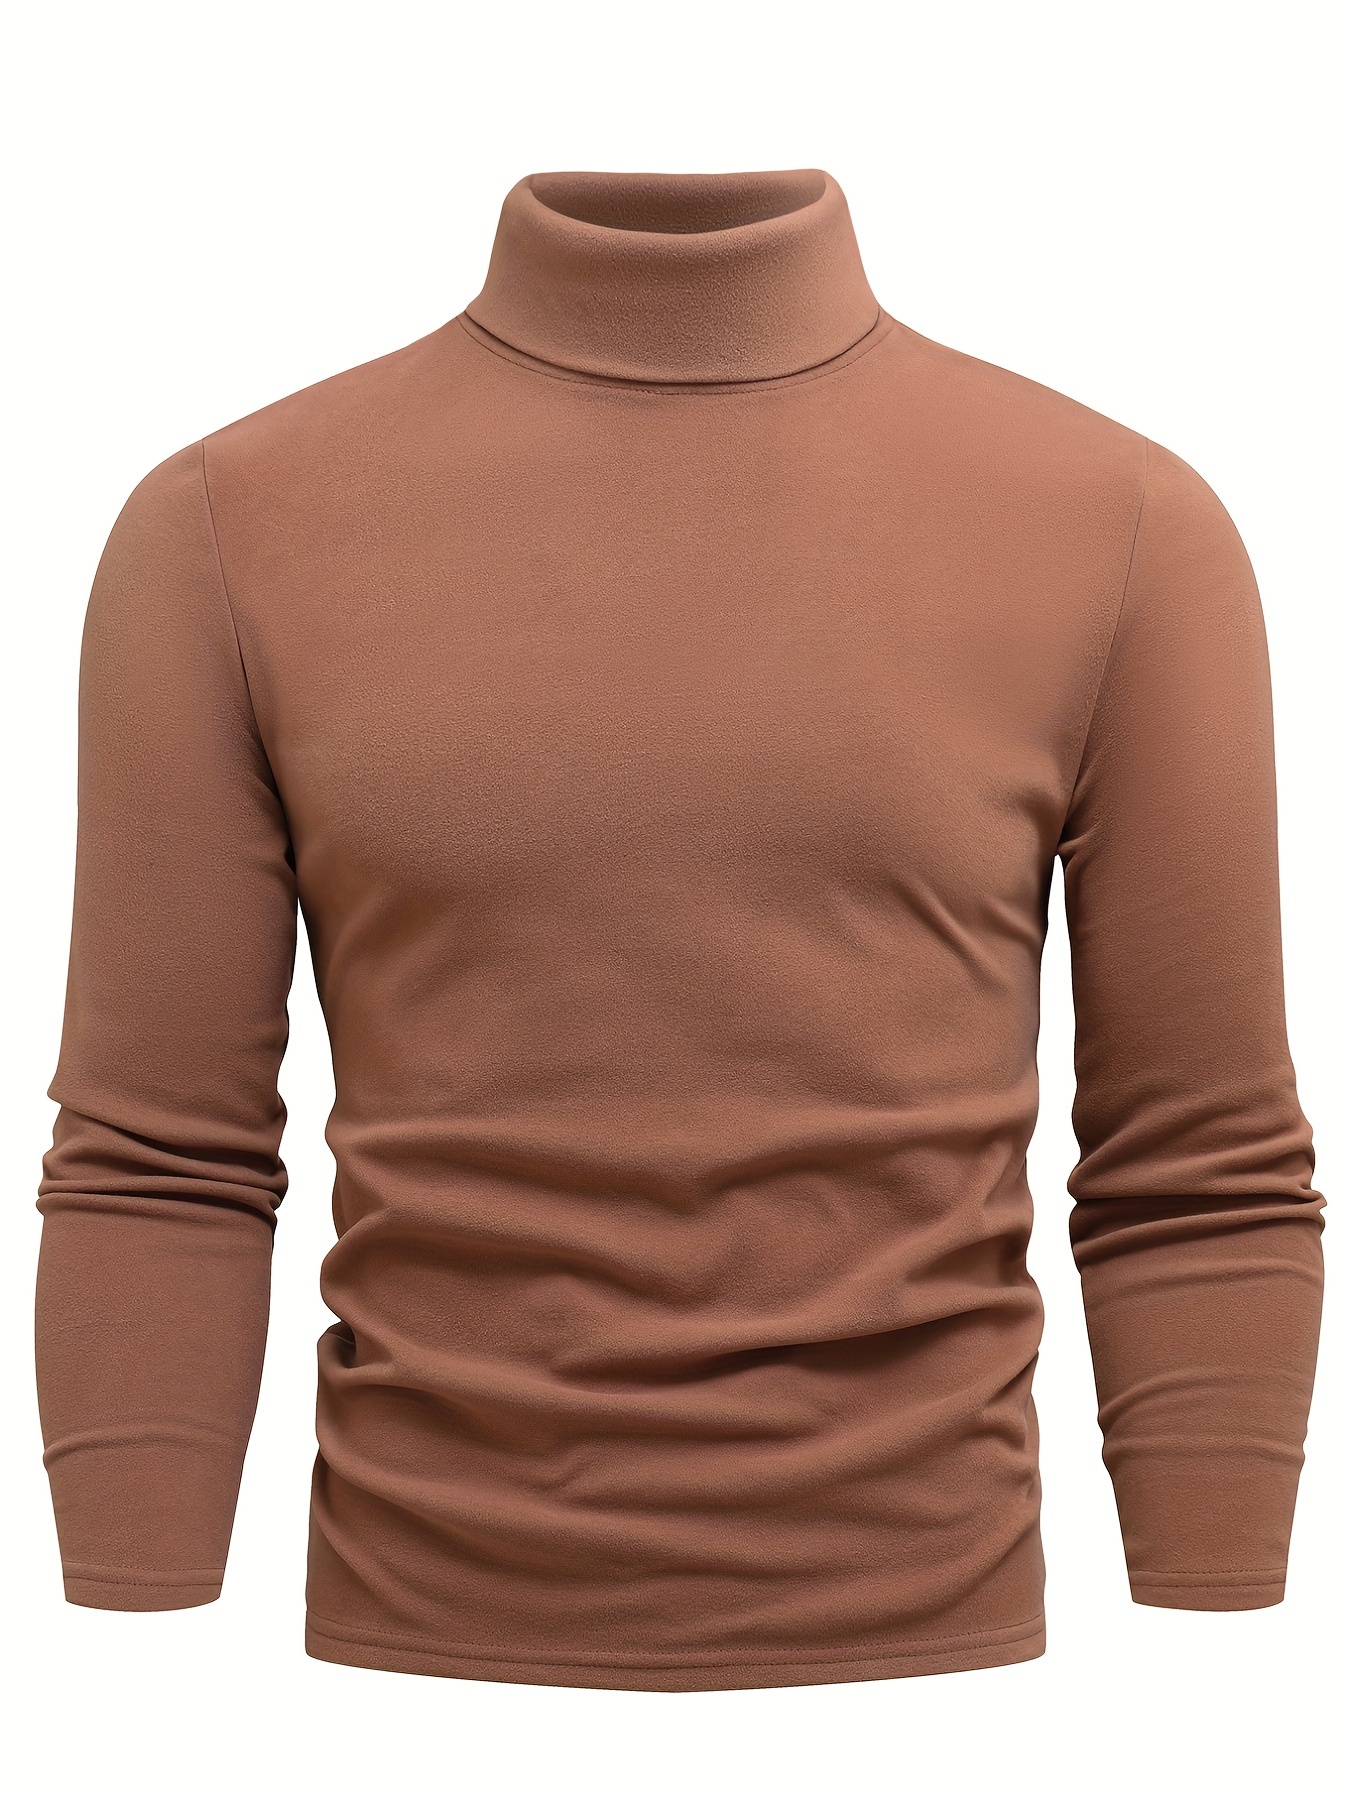 T-shirt chaud doublé en polaire pour homme, sous-vêtement thermique pour l' hiver - Temu Belgium